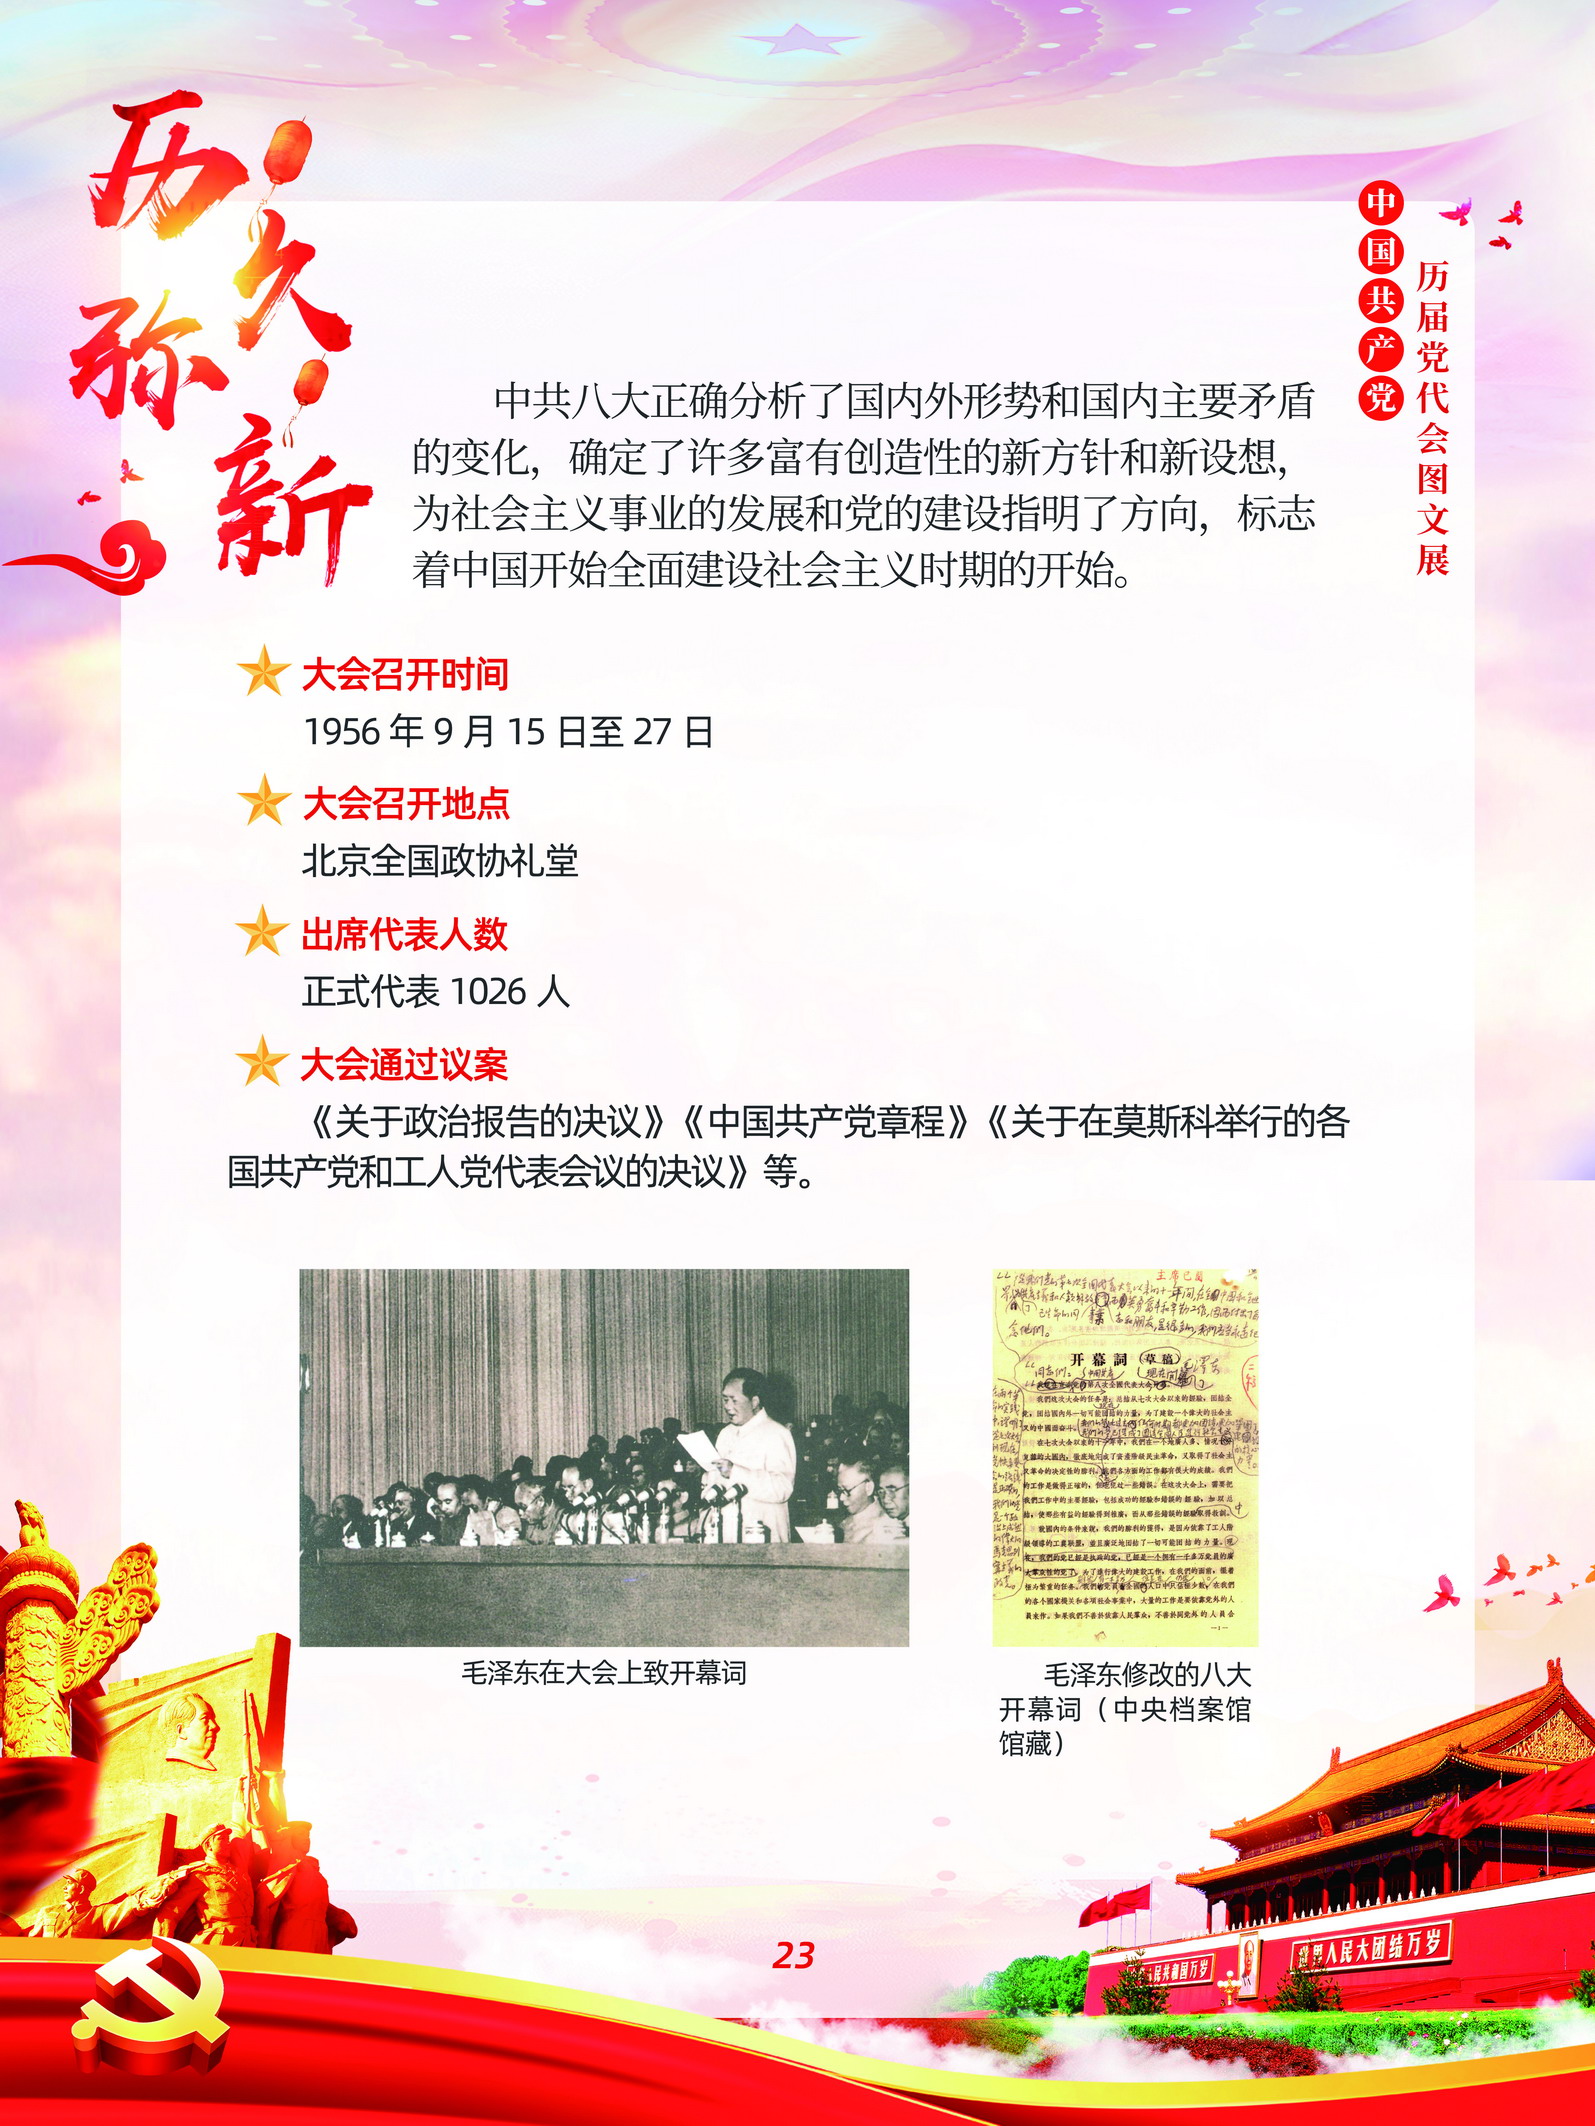 中国共产党历届党代会图文展_图22